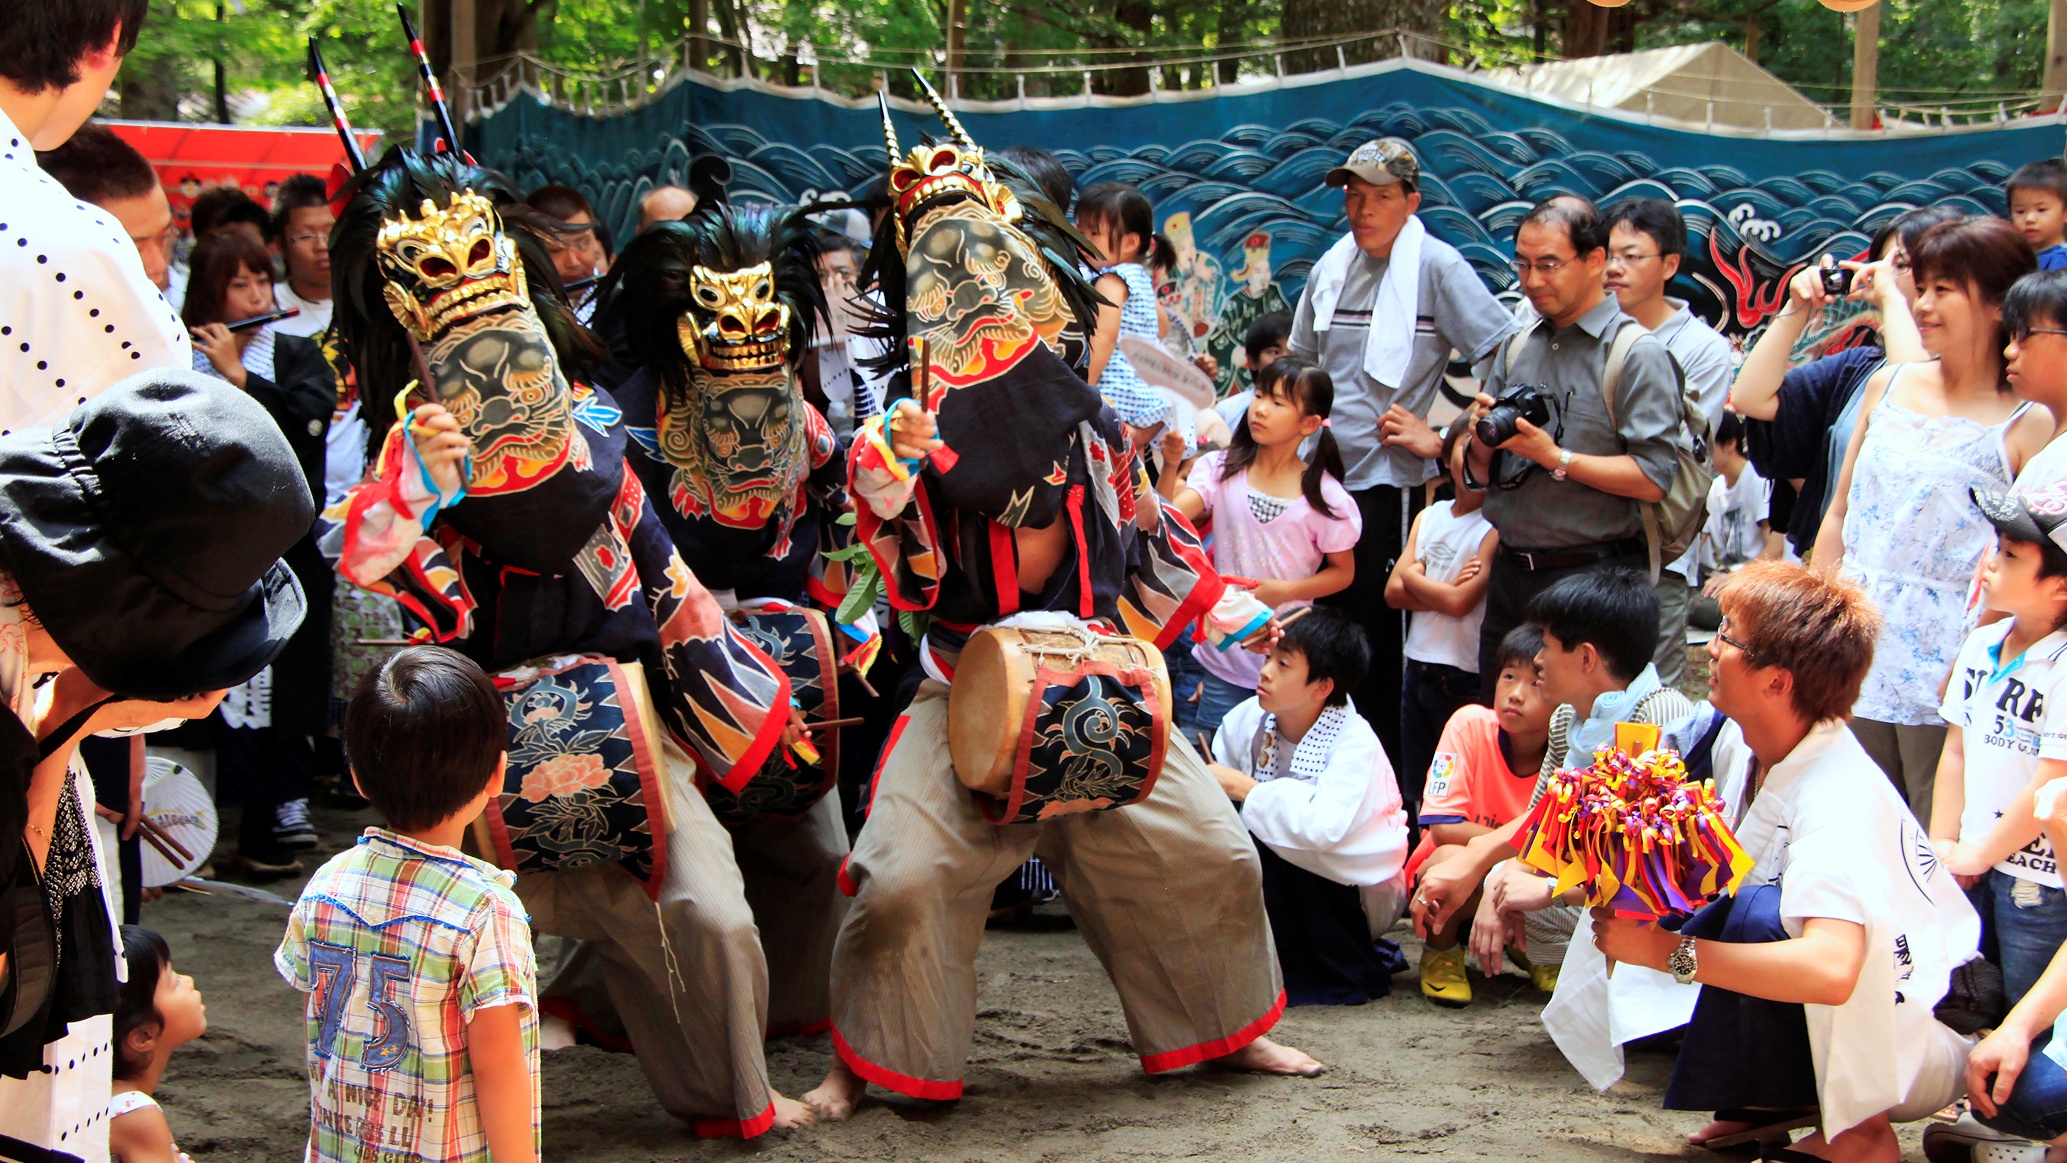 この祭りは神仏習合時代祭礼を伝える貴重なものとして県選択無形民俗文化財に指定されています。。。